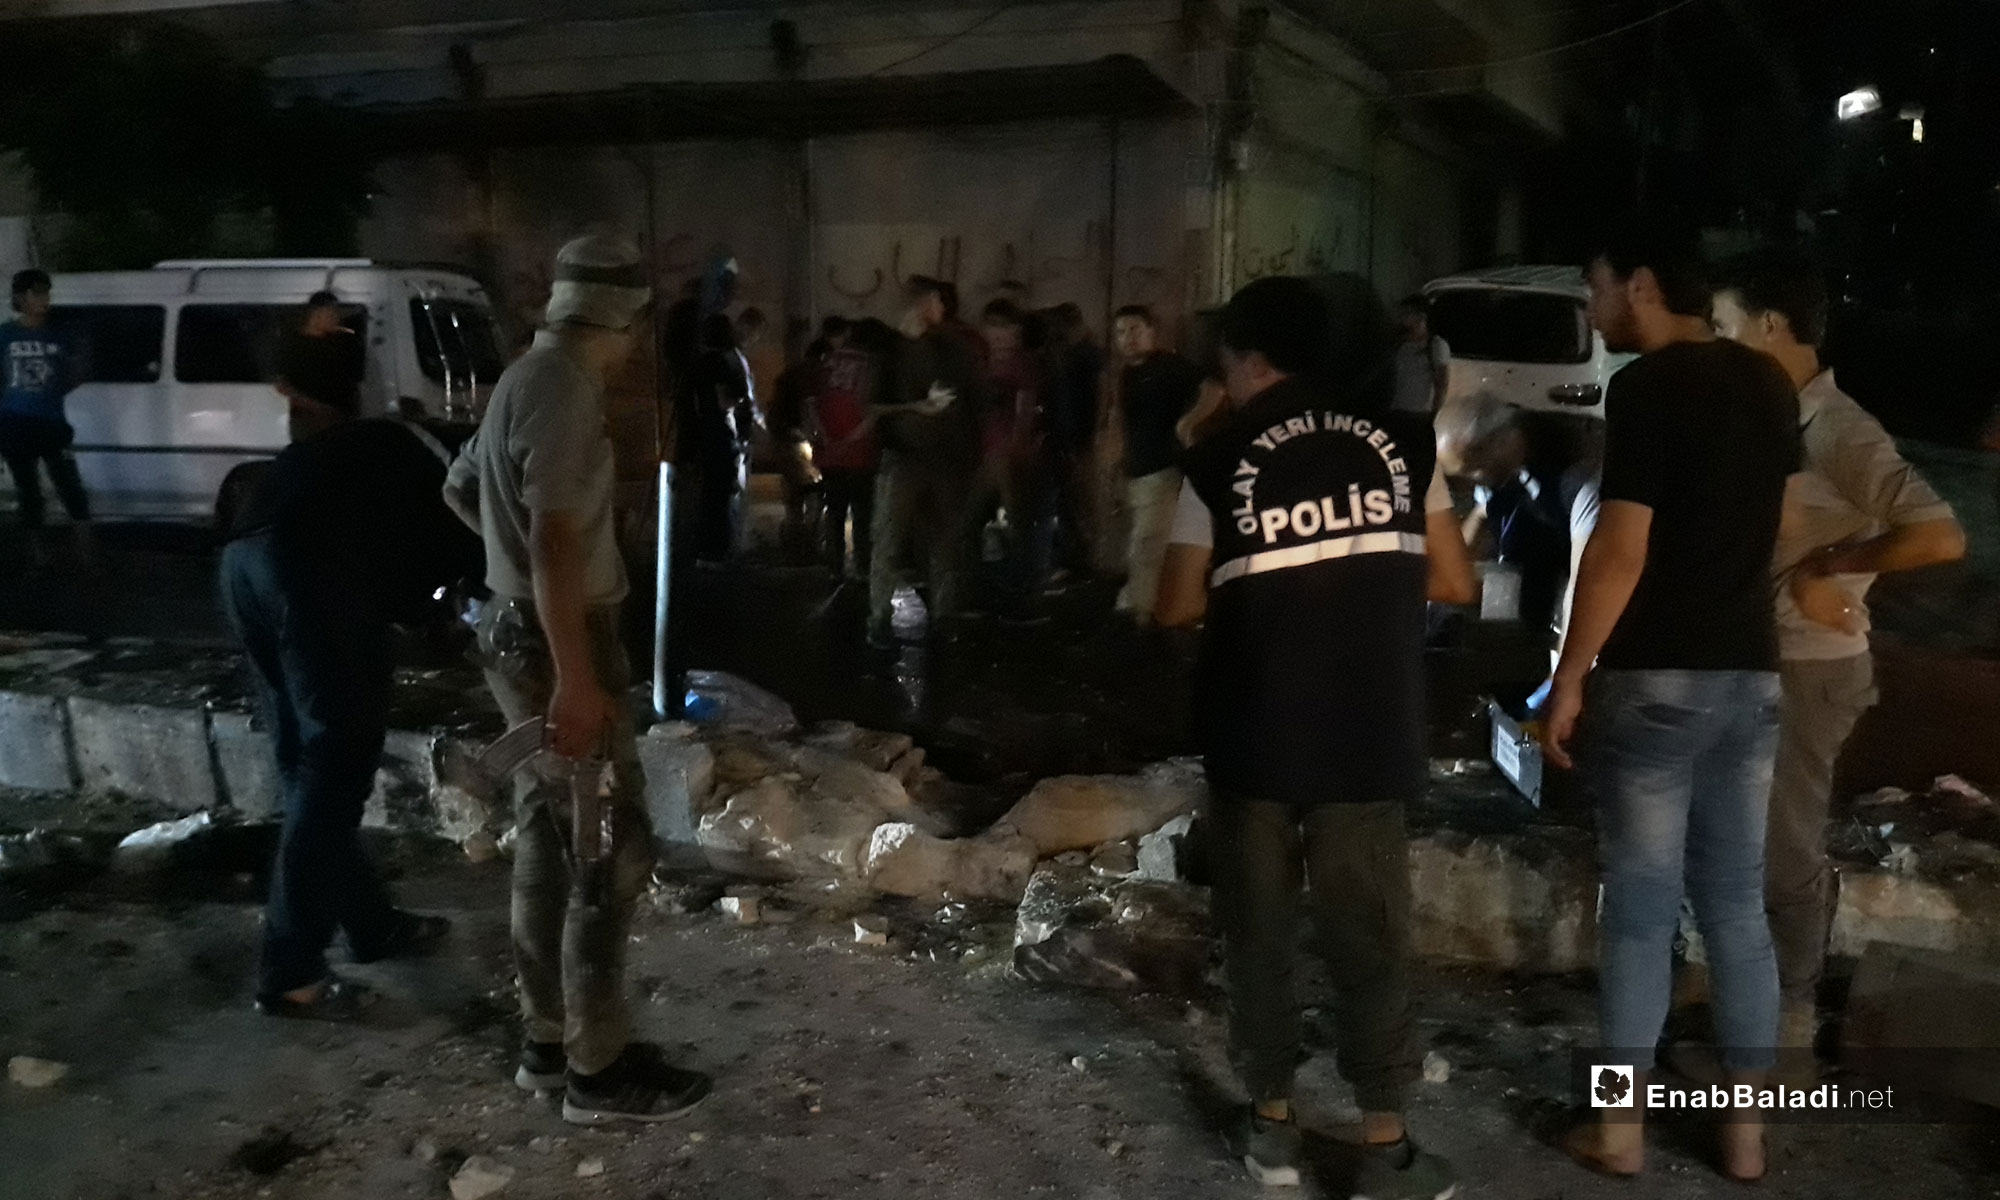 أثار الدمار بعد انفجار عبوة ناسفة في مدينة عفرين - 29 من آب 2018 (عنب بلدي)